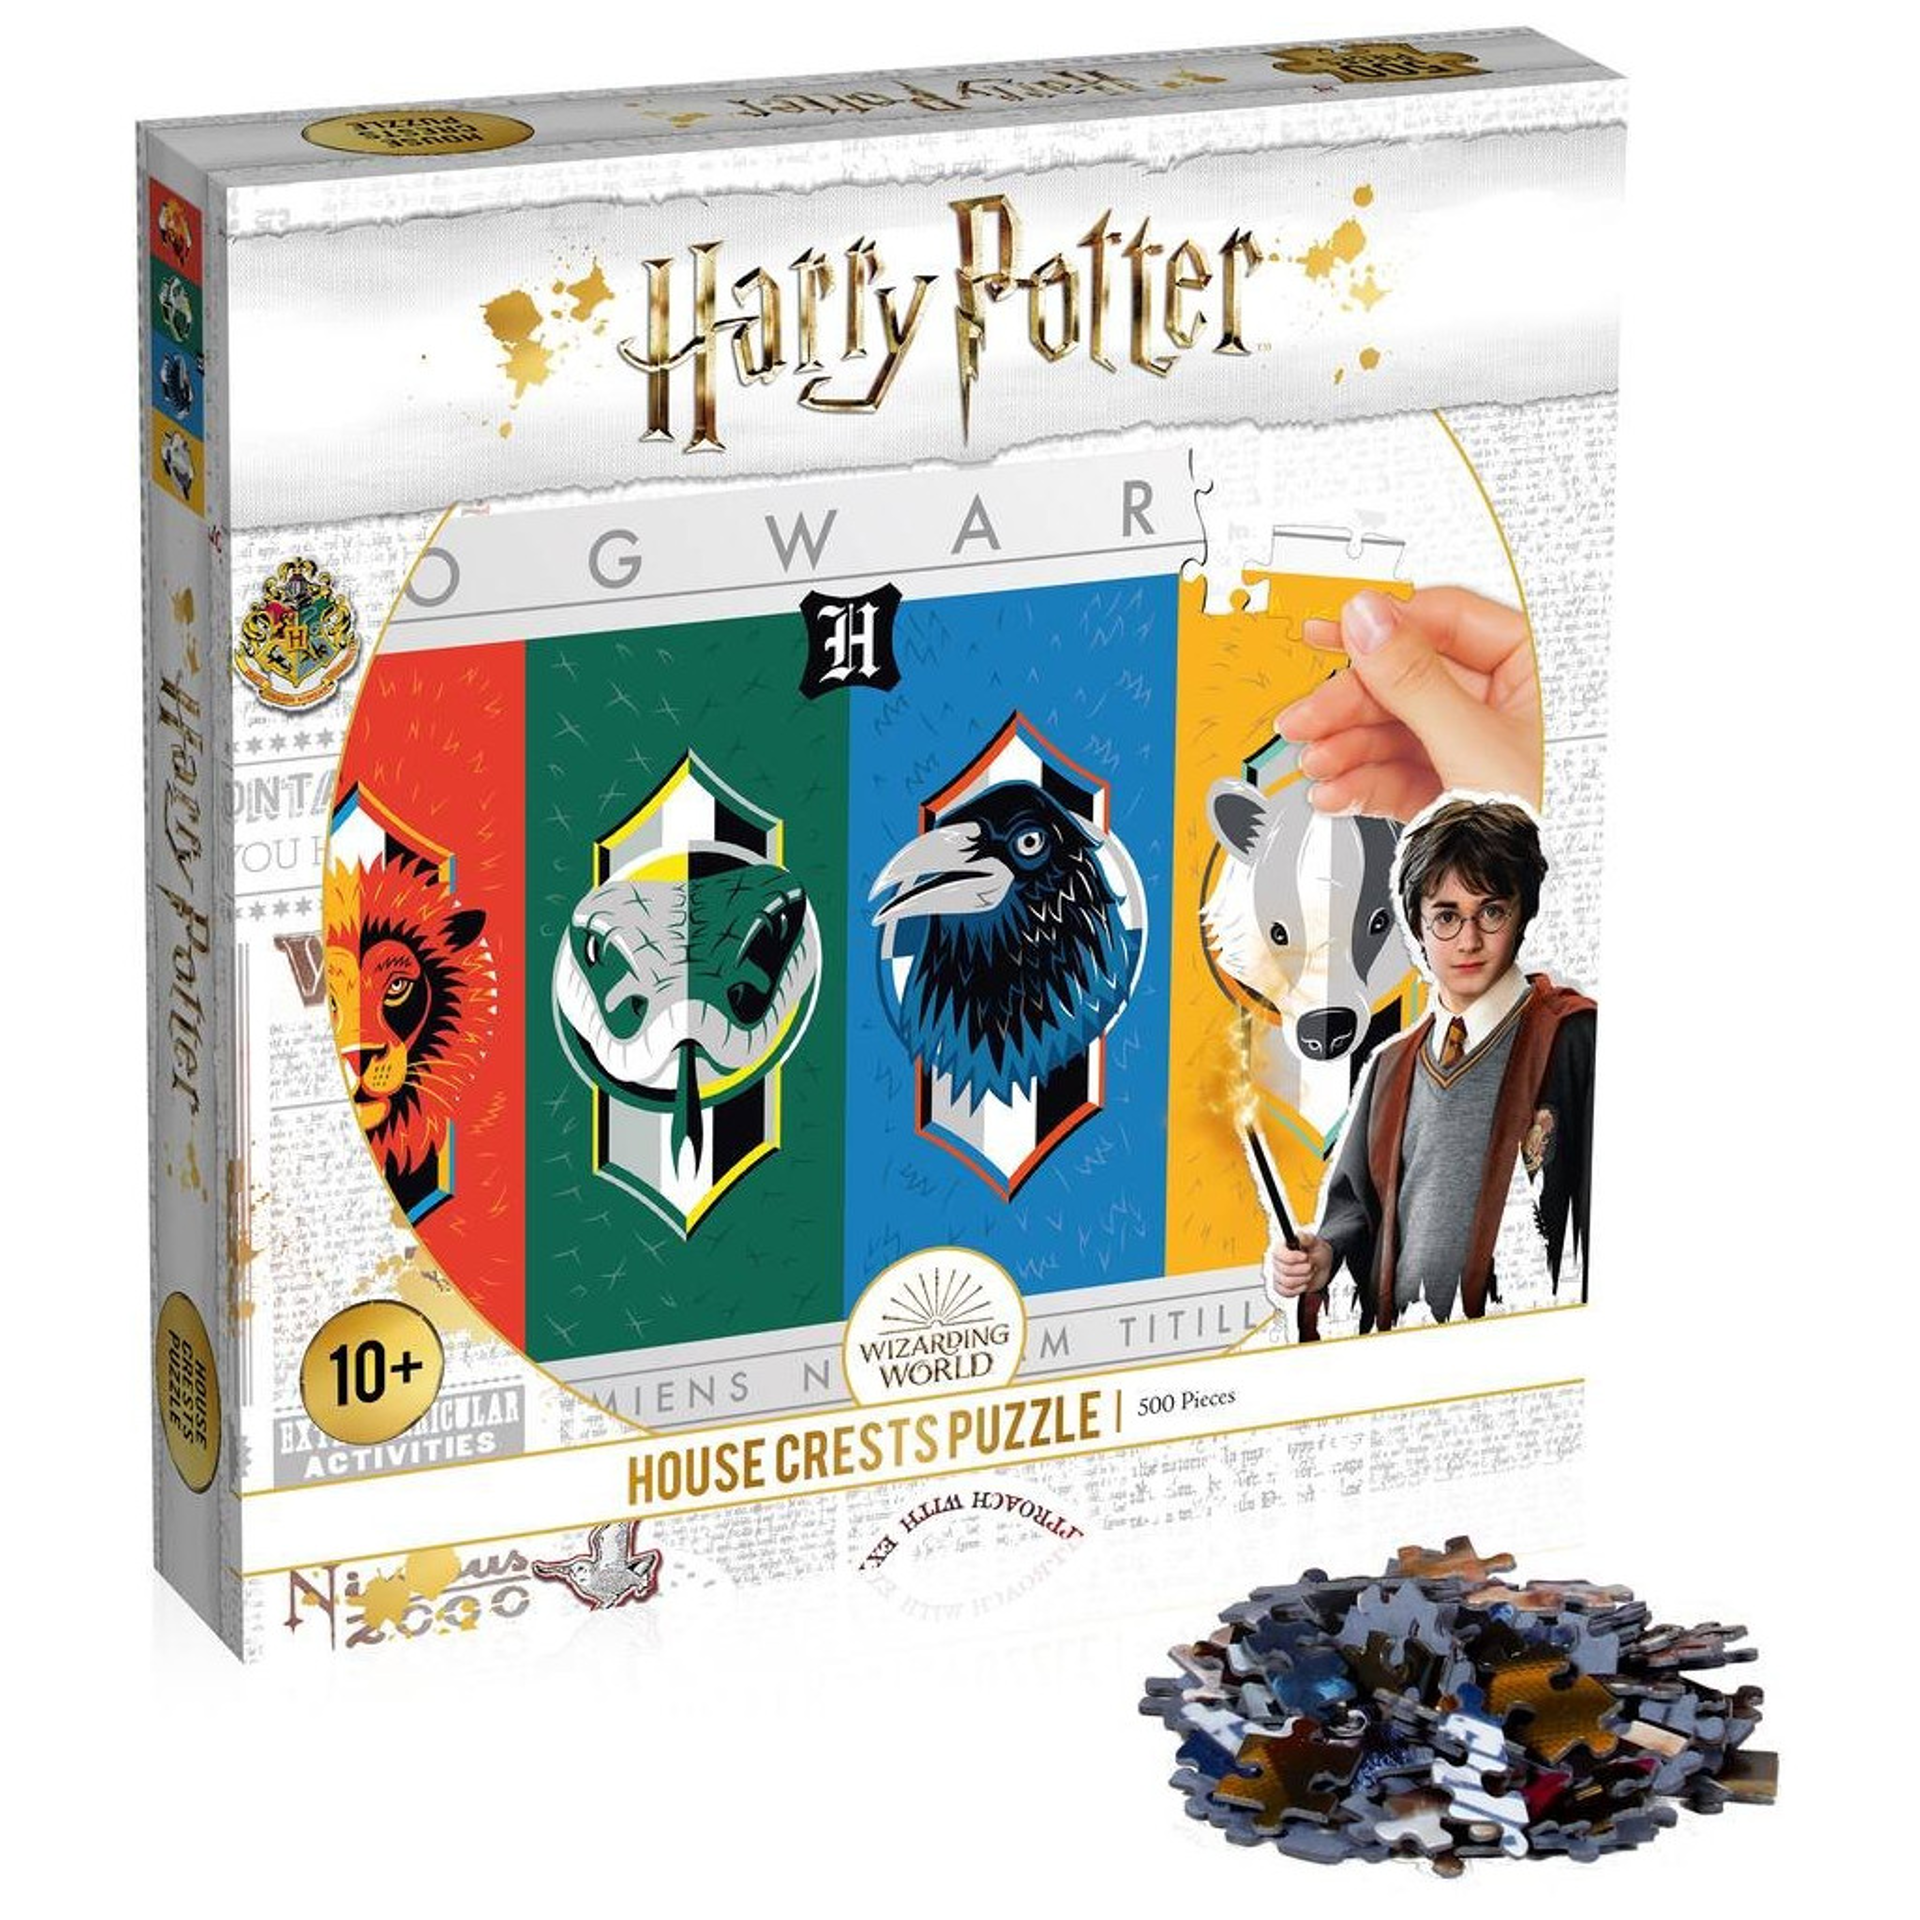 Harry Potter - Maisons Poudlard Puzzle 1000 pcs